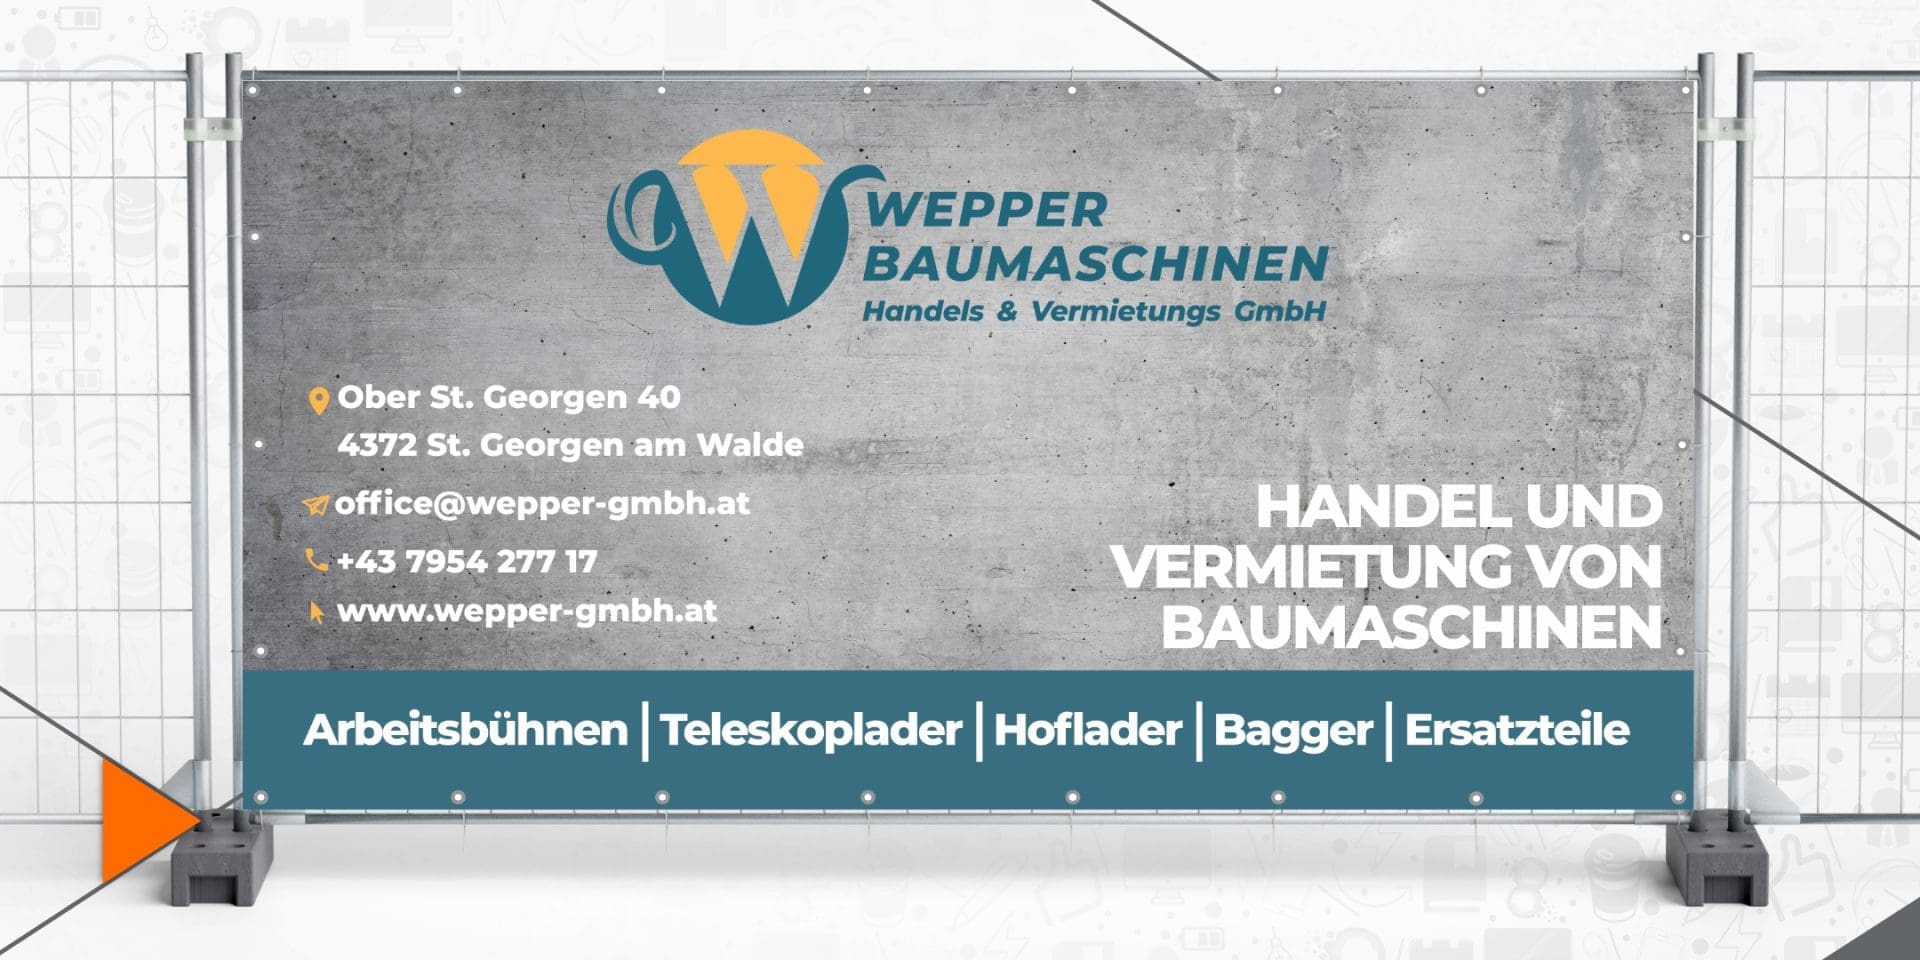 Bauzaunblende – Wepper Handels & Vermietungs GmbH